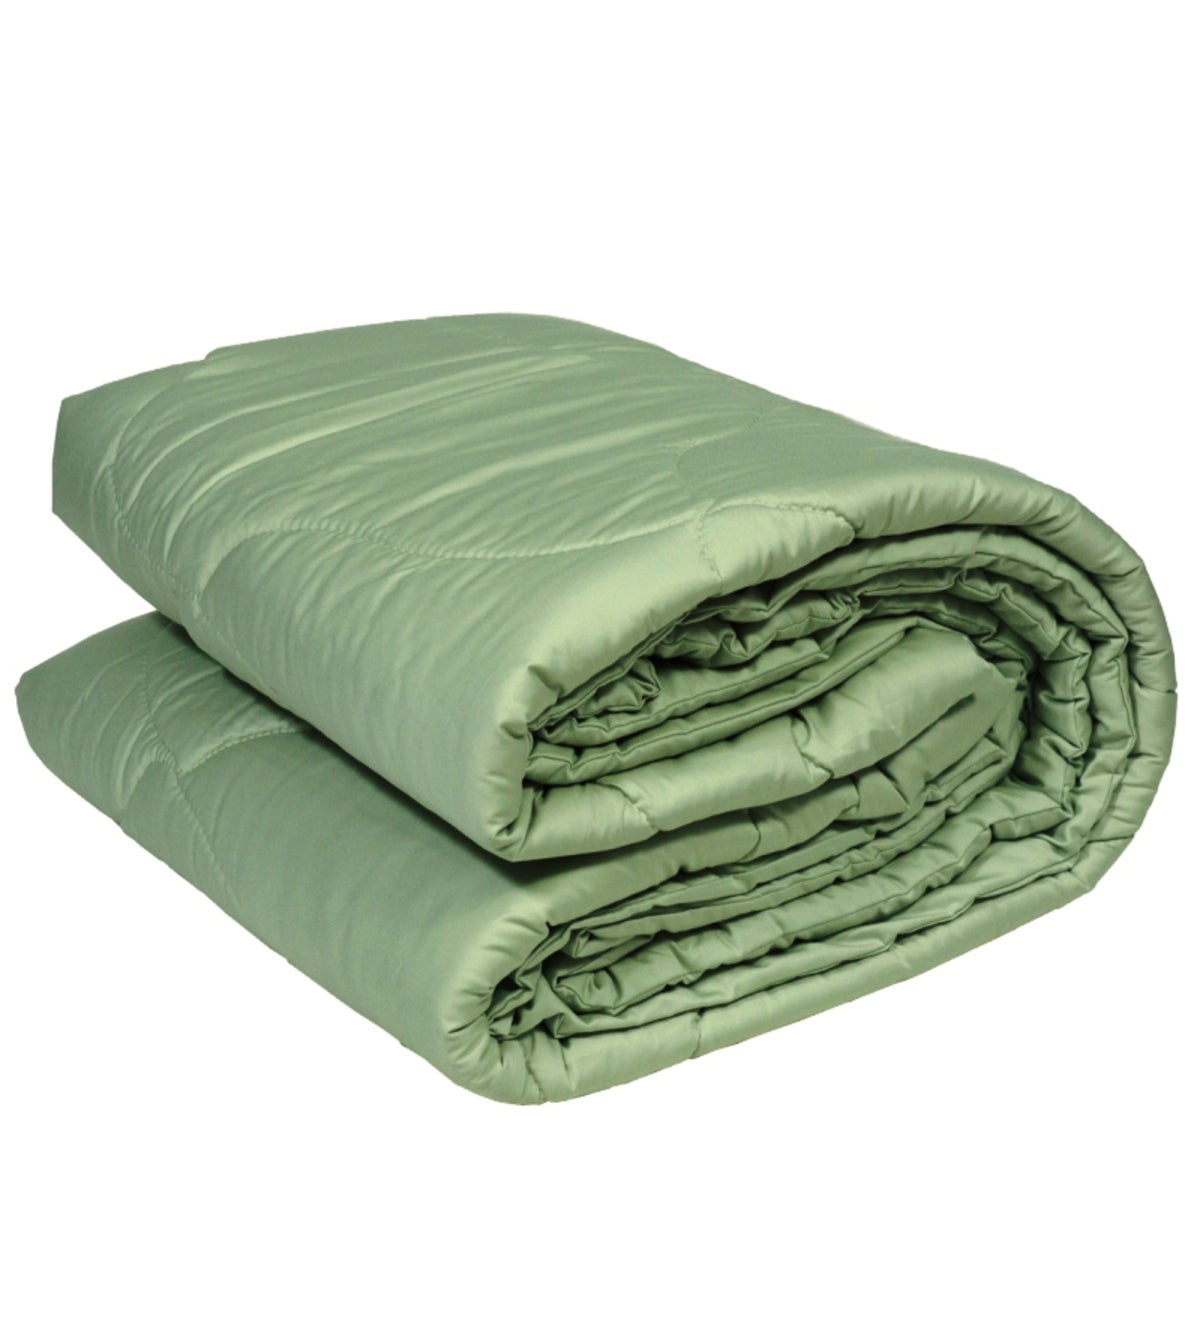 Теплый хлопок купить. Одеяло. Шерстяное одеяло. Одеяло Китай 100% шерсть. Ткань шерстяная для одеяла.